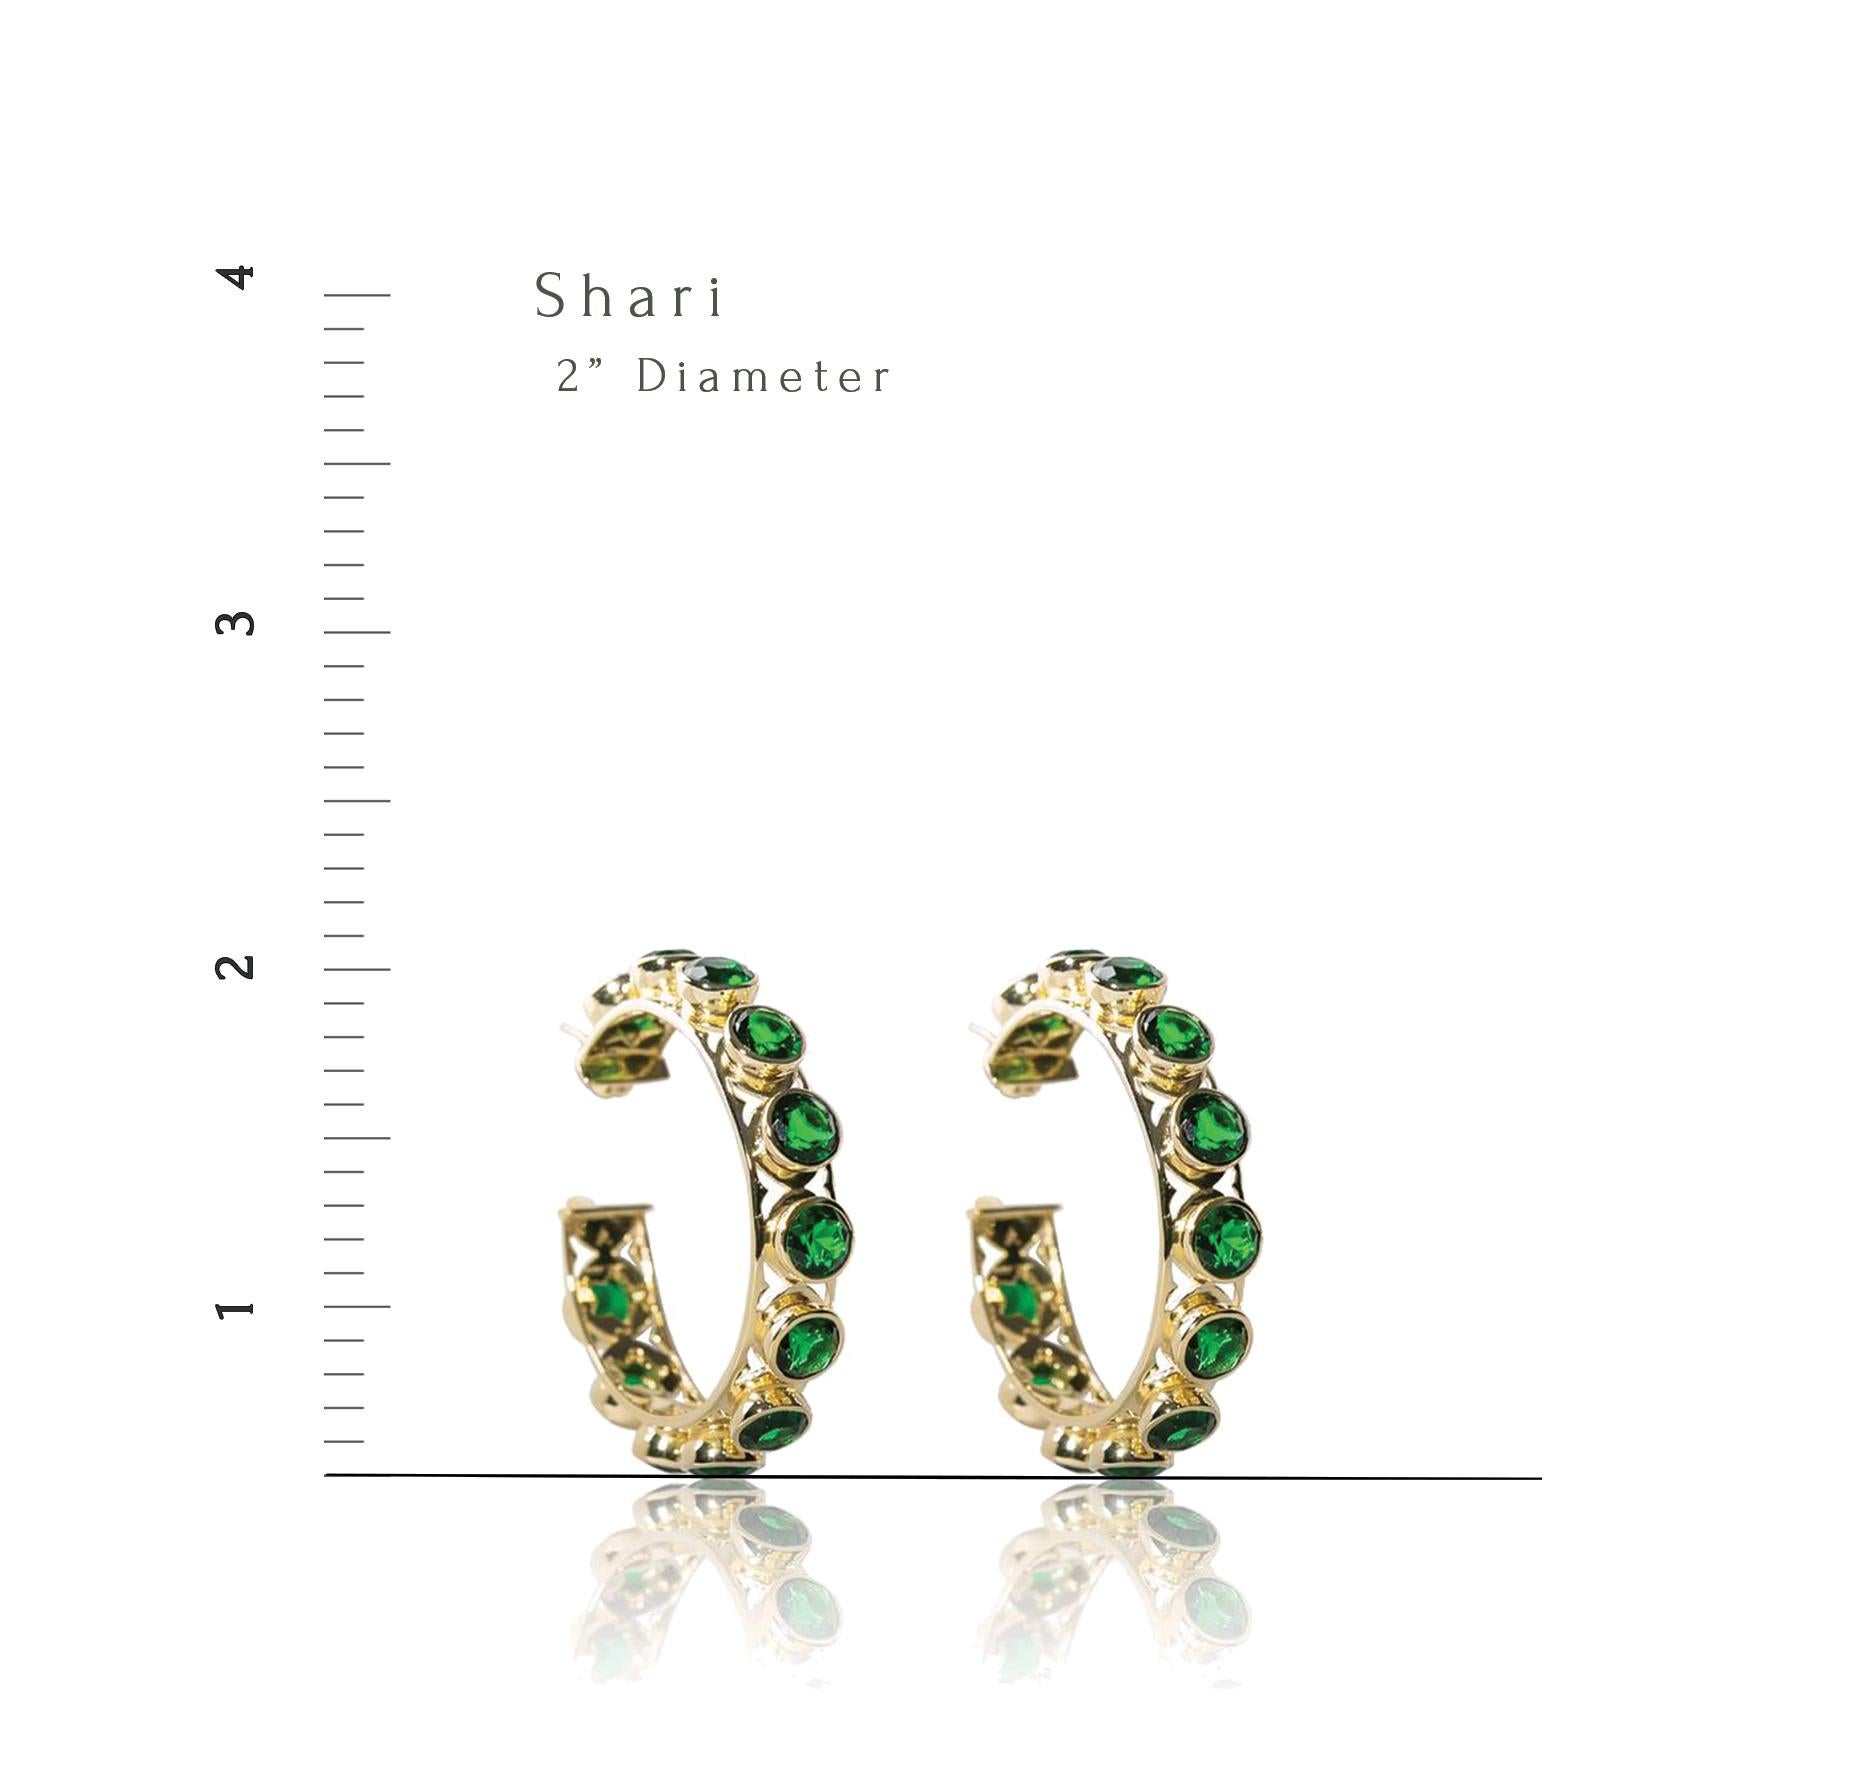 Shari Hoop Earrings in 18K Gold with Multicolored Gemstones For Sale 4